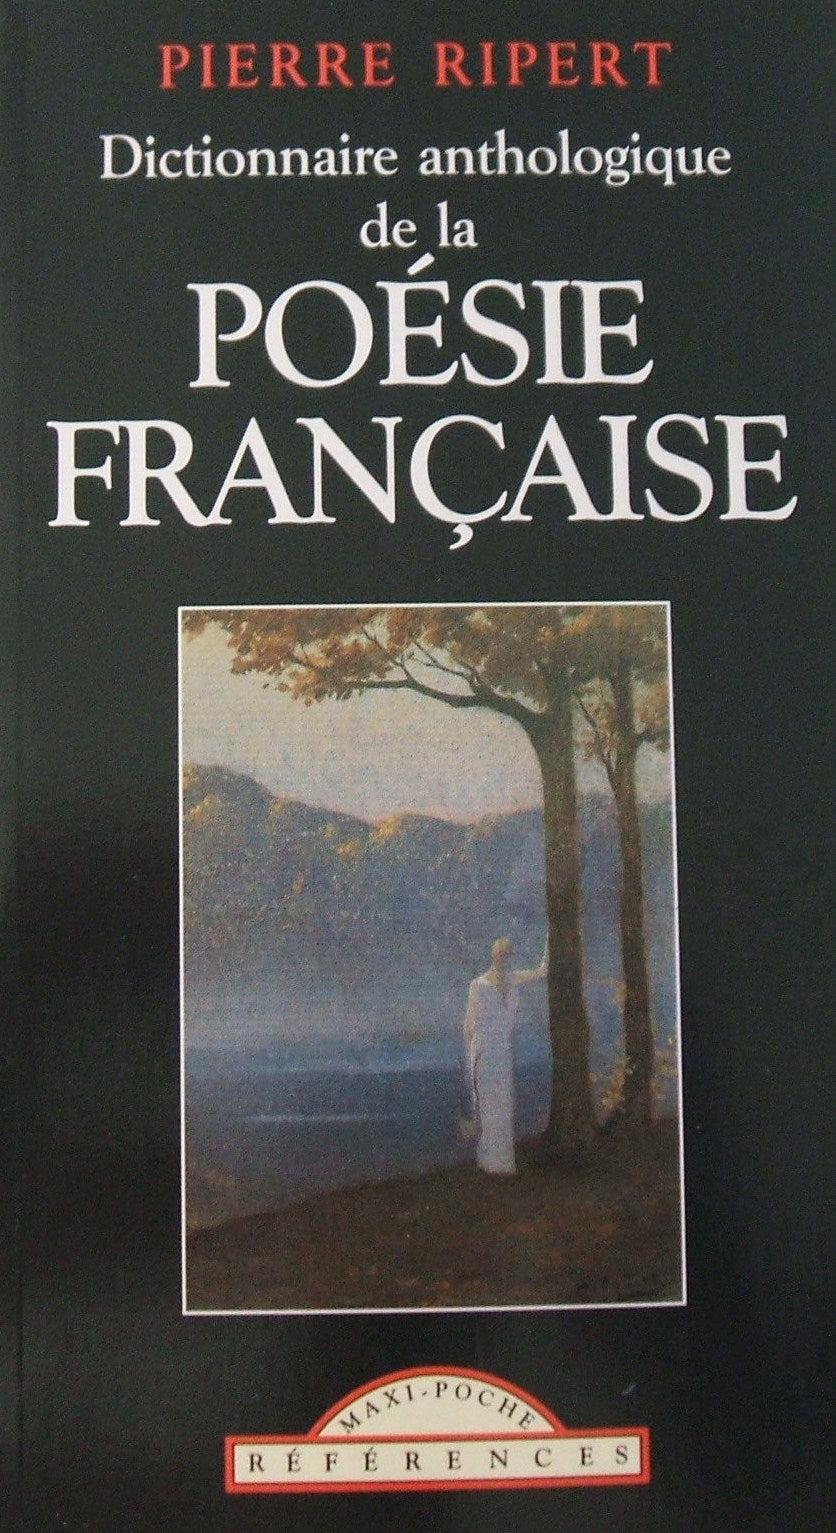 Livre ISBN 2743409673 Dictionnaire anthologique de la poésie (Pierre Ripert)